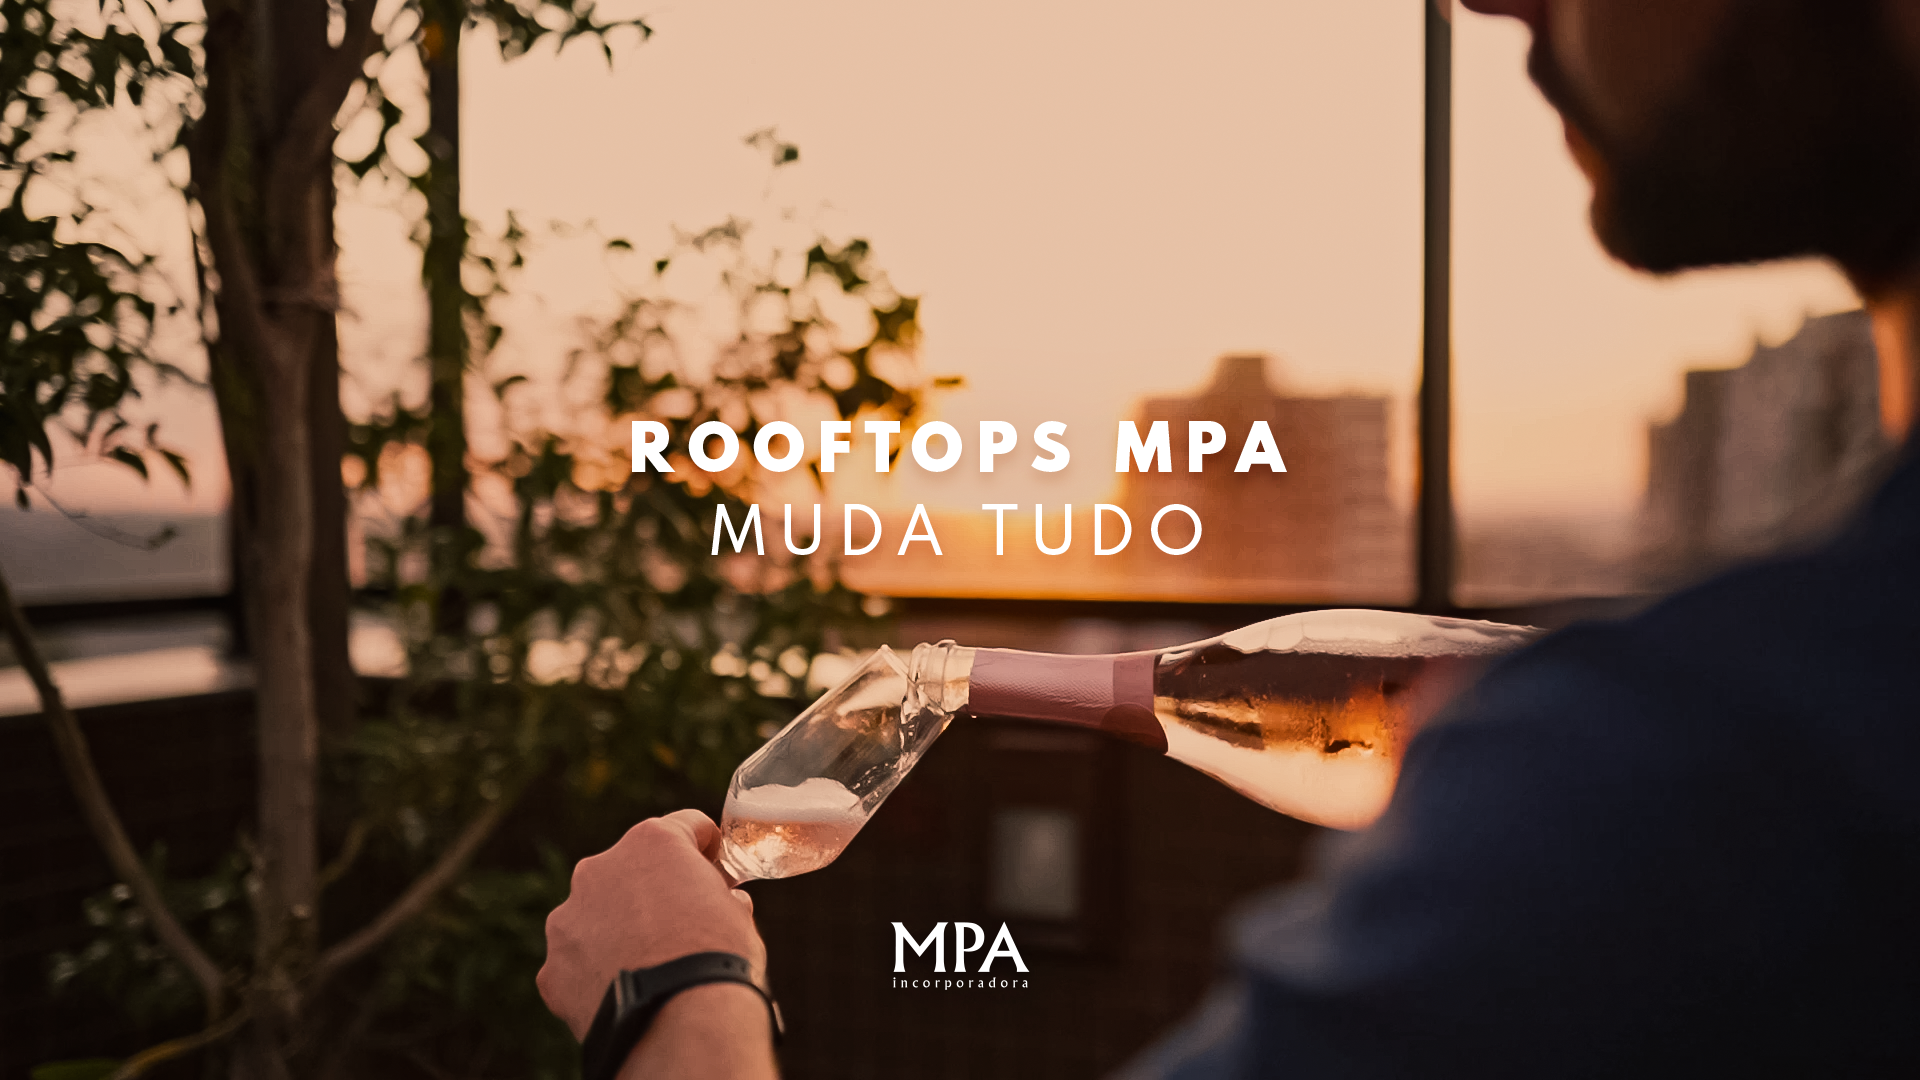 Rooftop MPA, feitos para você se apaixonar